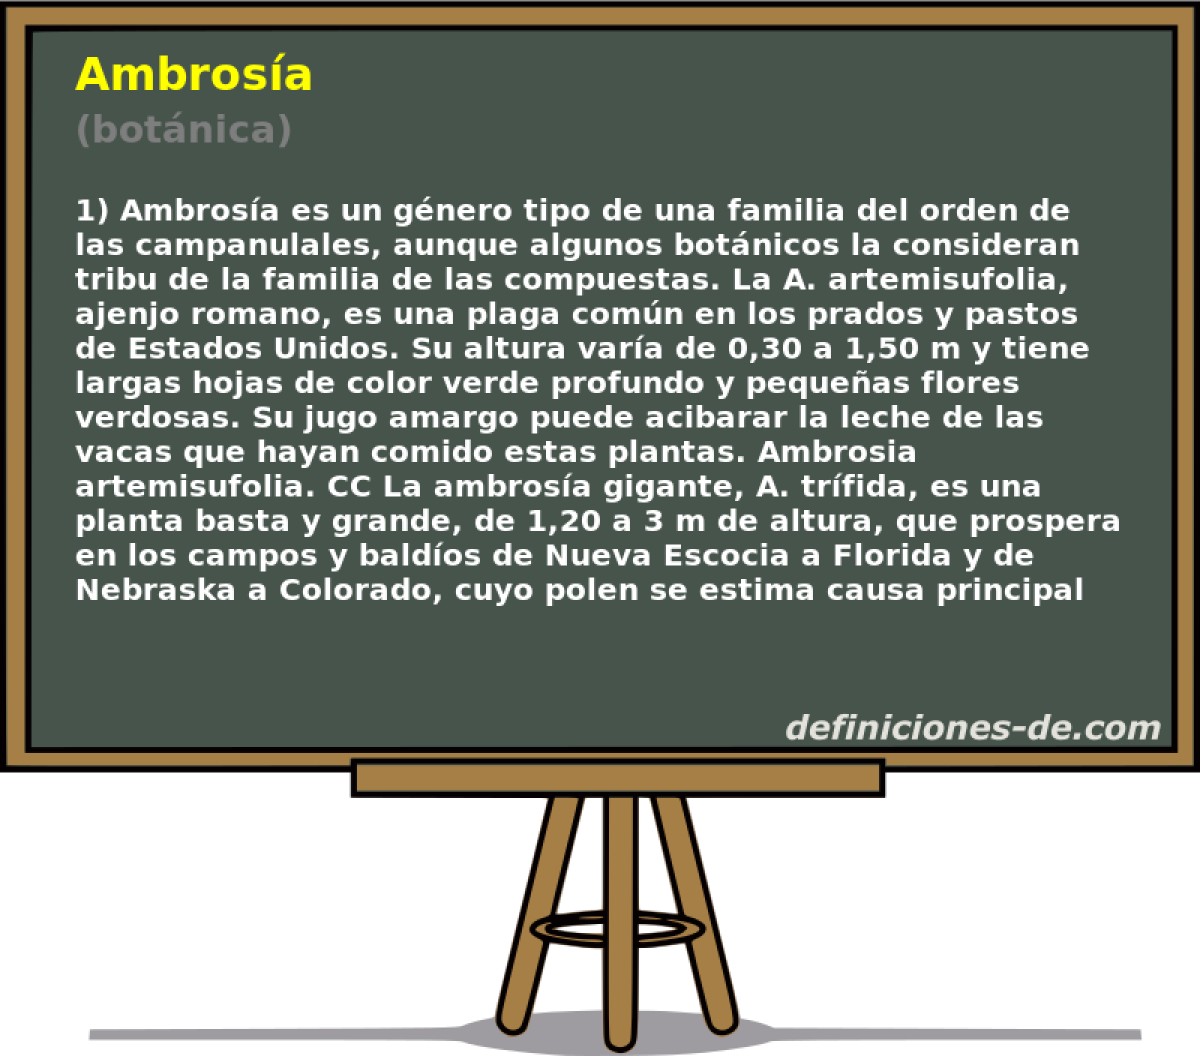 Ambrosa (botnica)